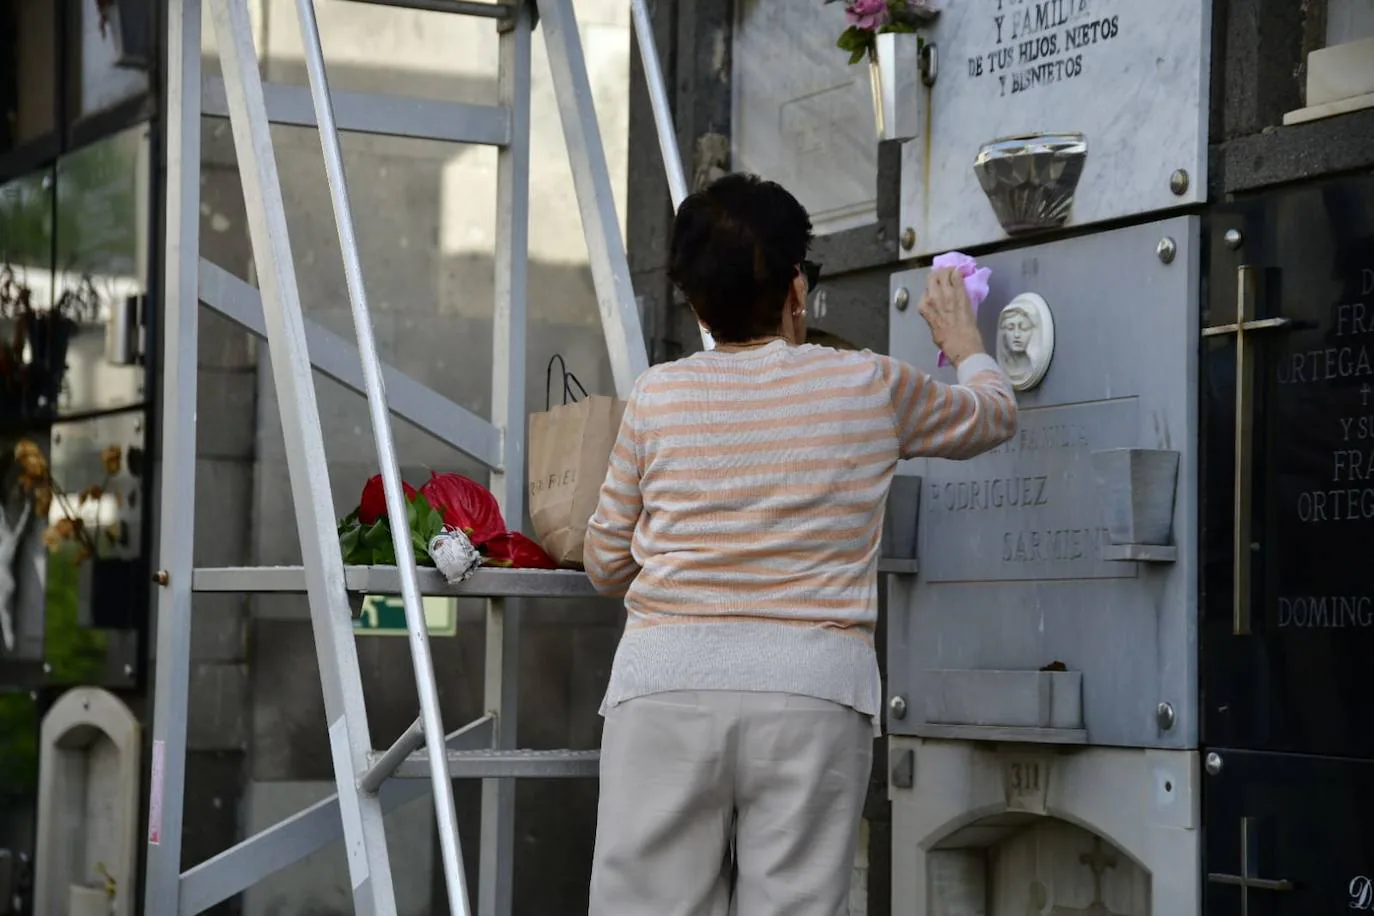 Fotos: Las flores se adueñan de los cementerios